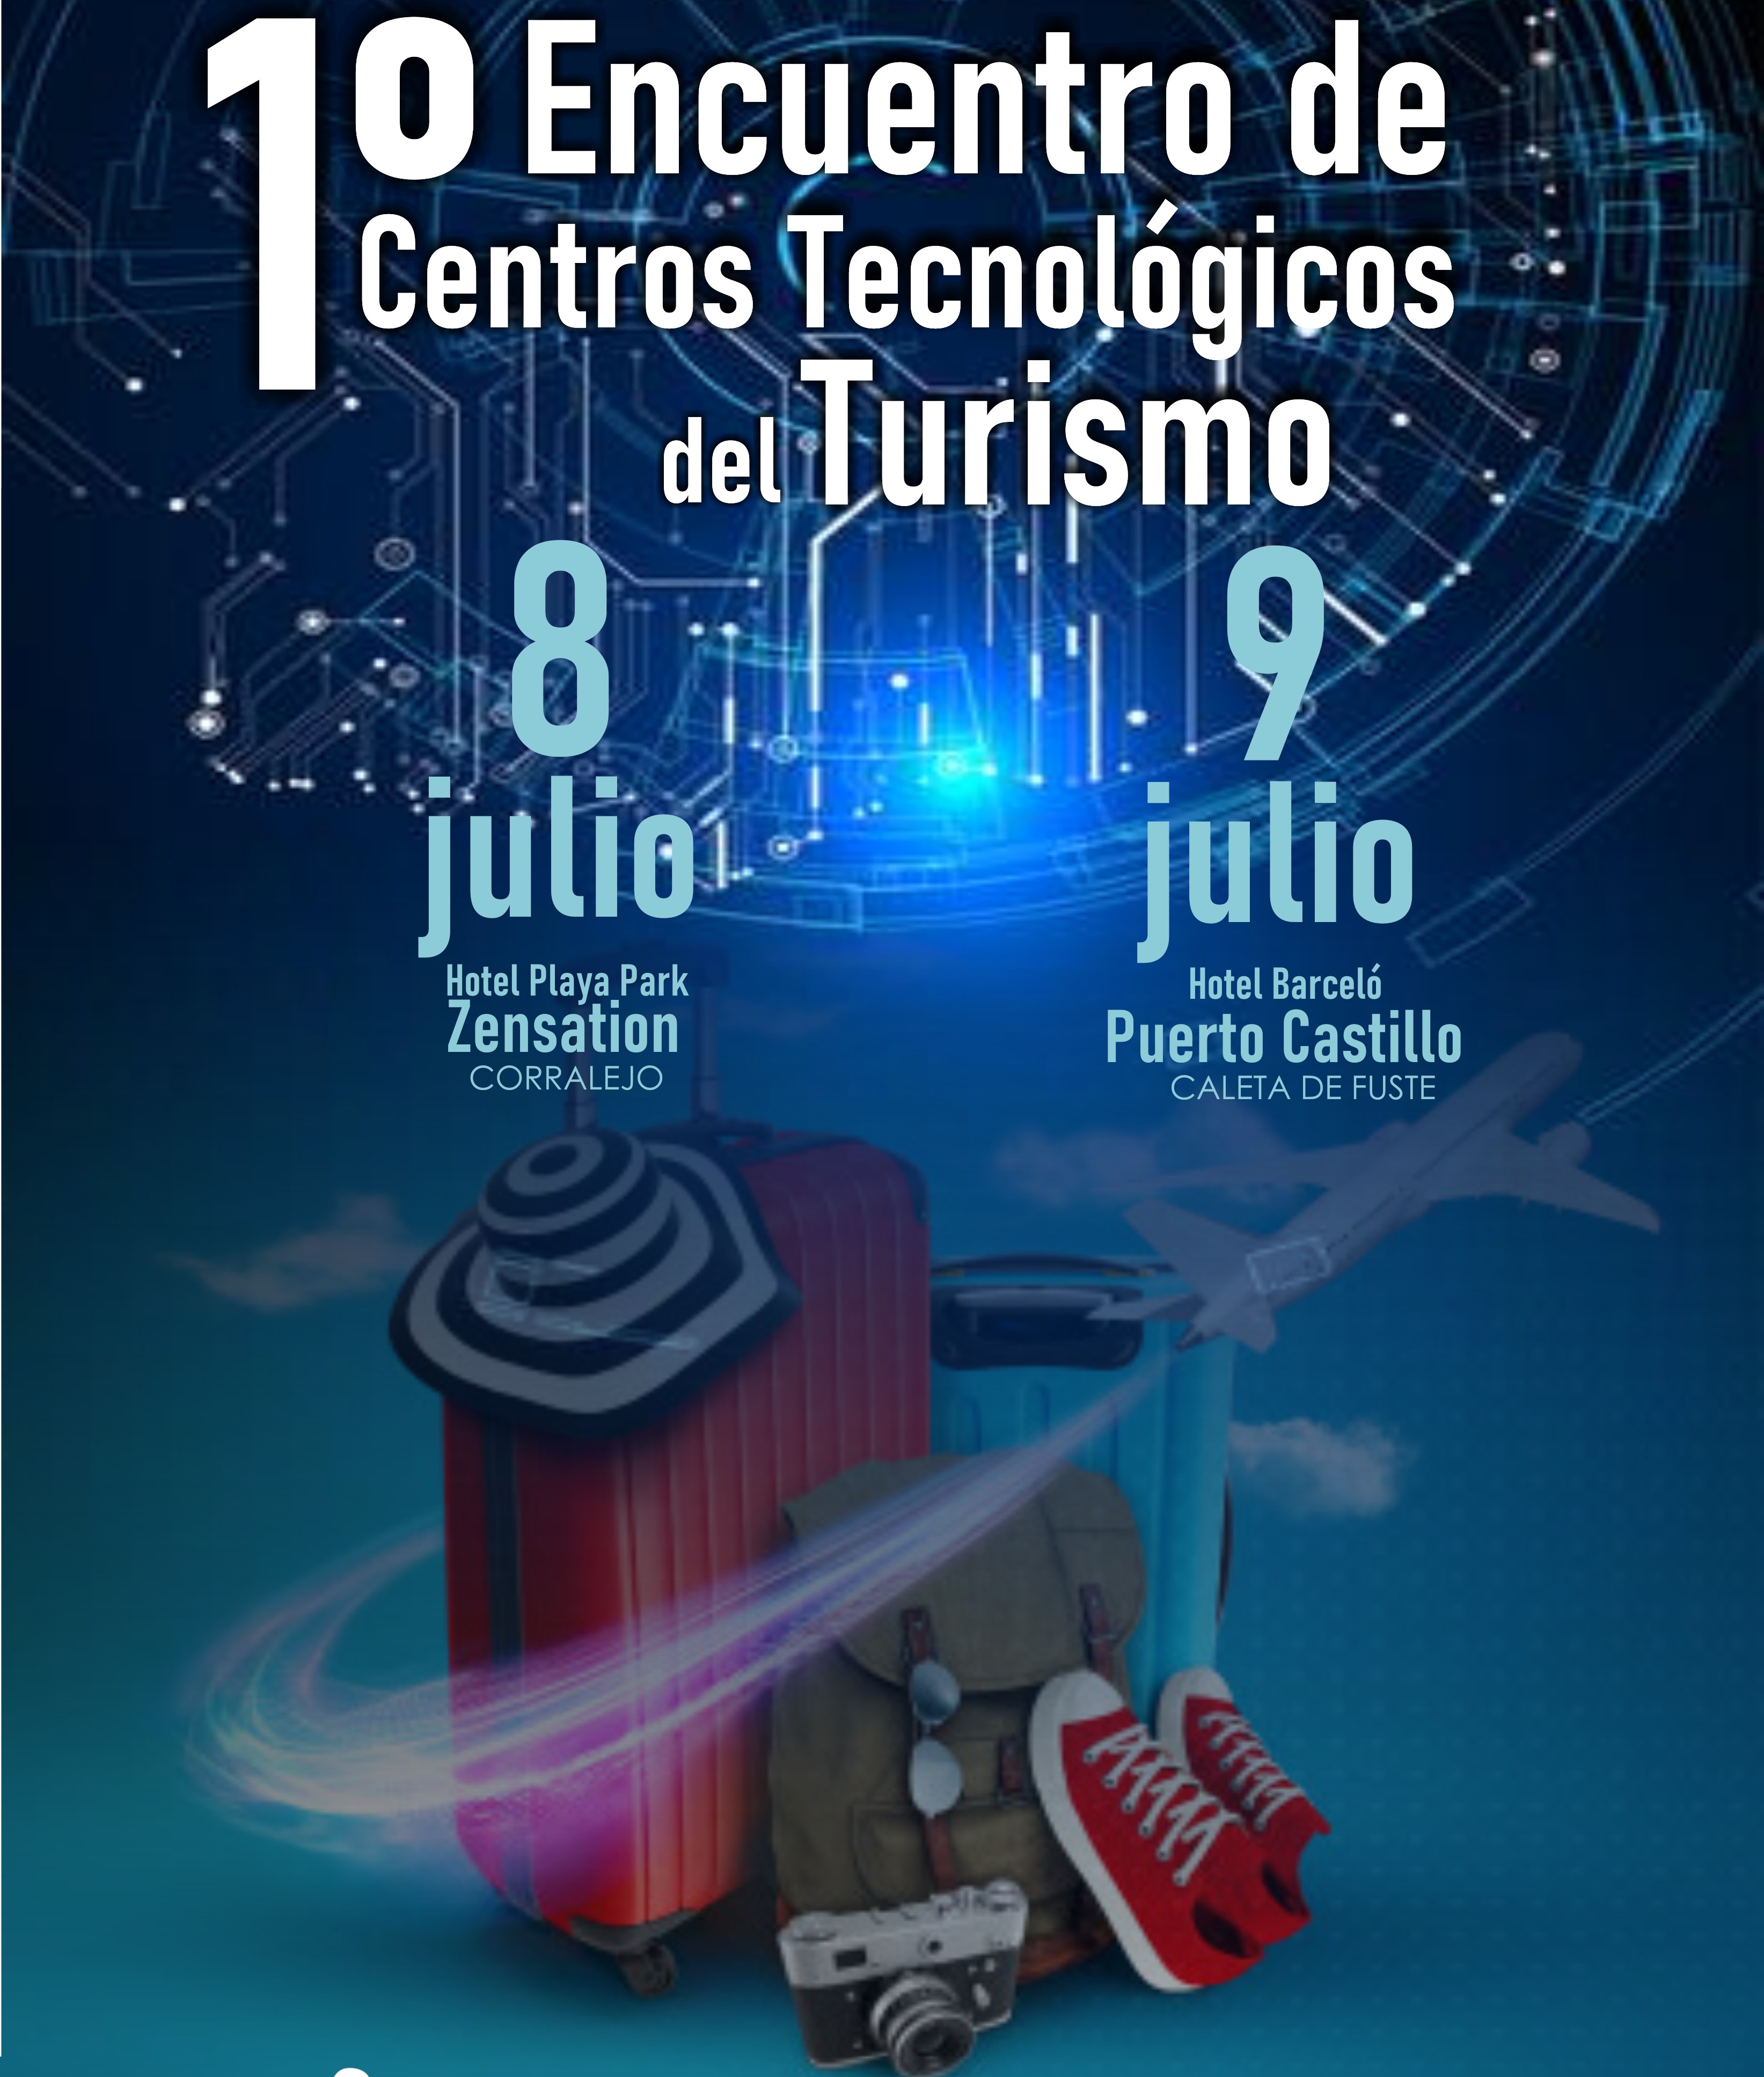 Encuentro de Centros Tecnológicos de Turismo en Fuerteventura / CanariasNoticias.es